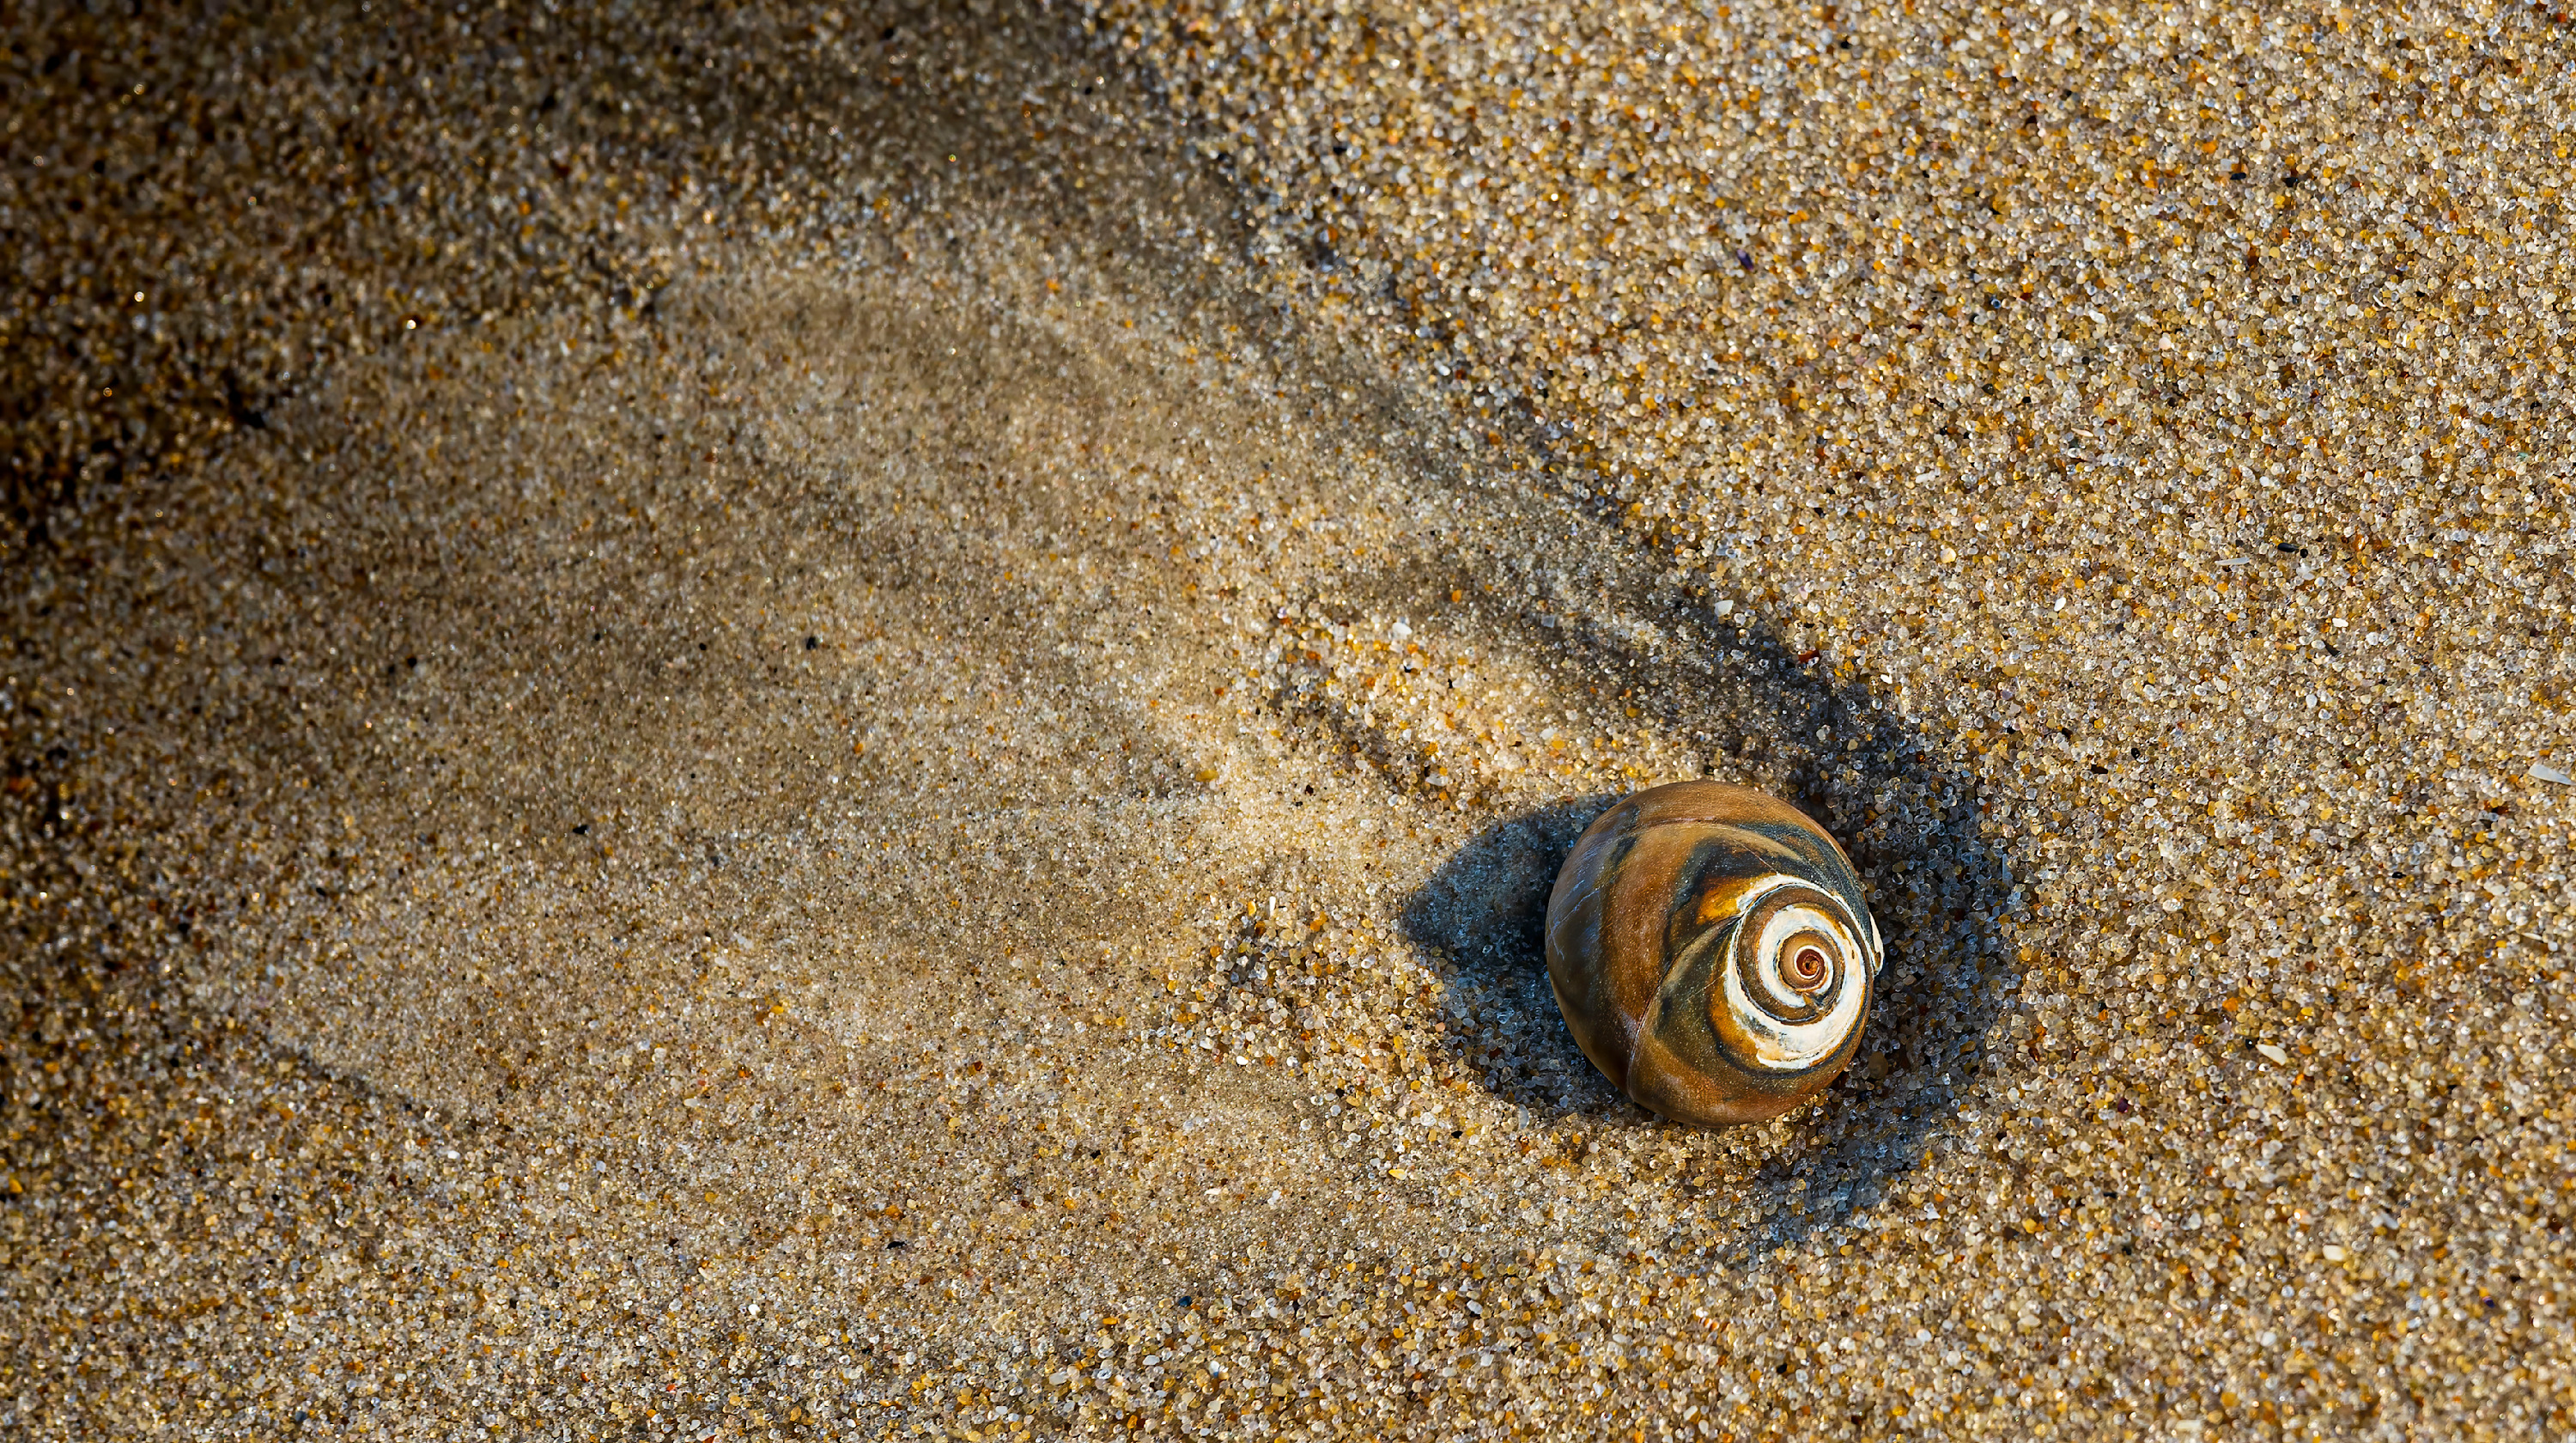 Sand snail cvedwx